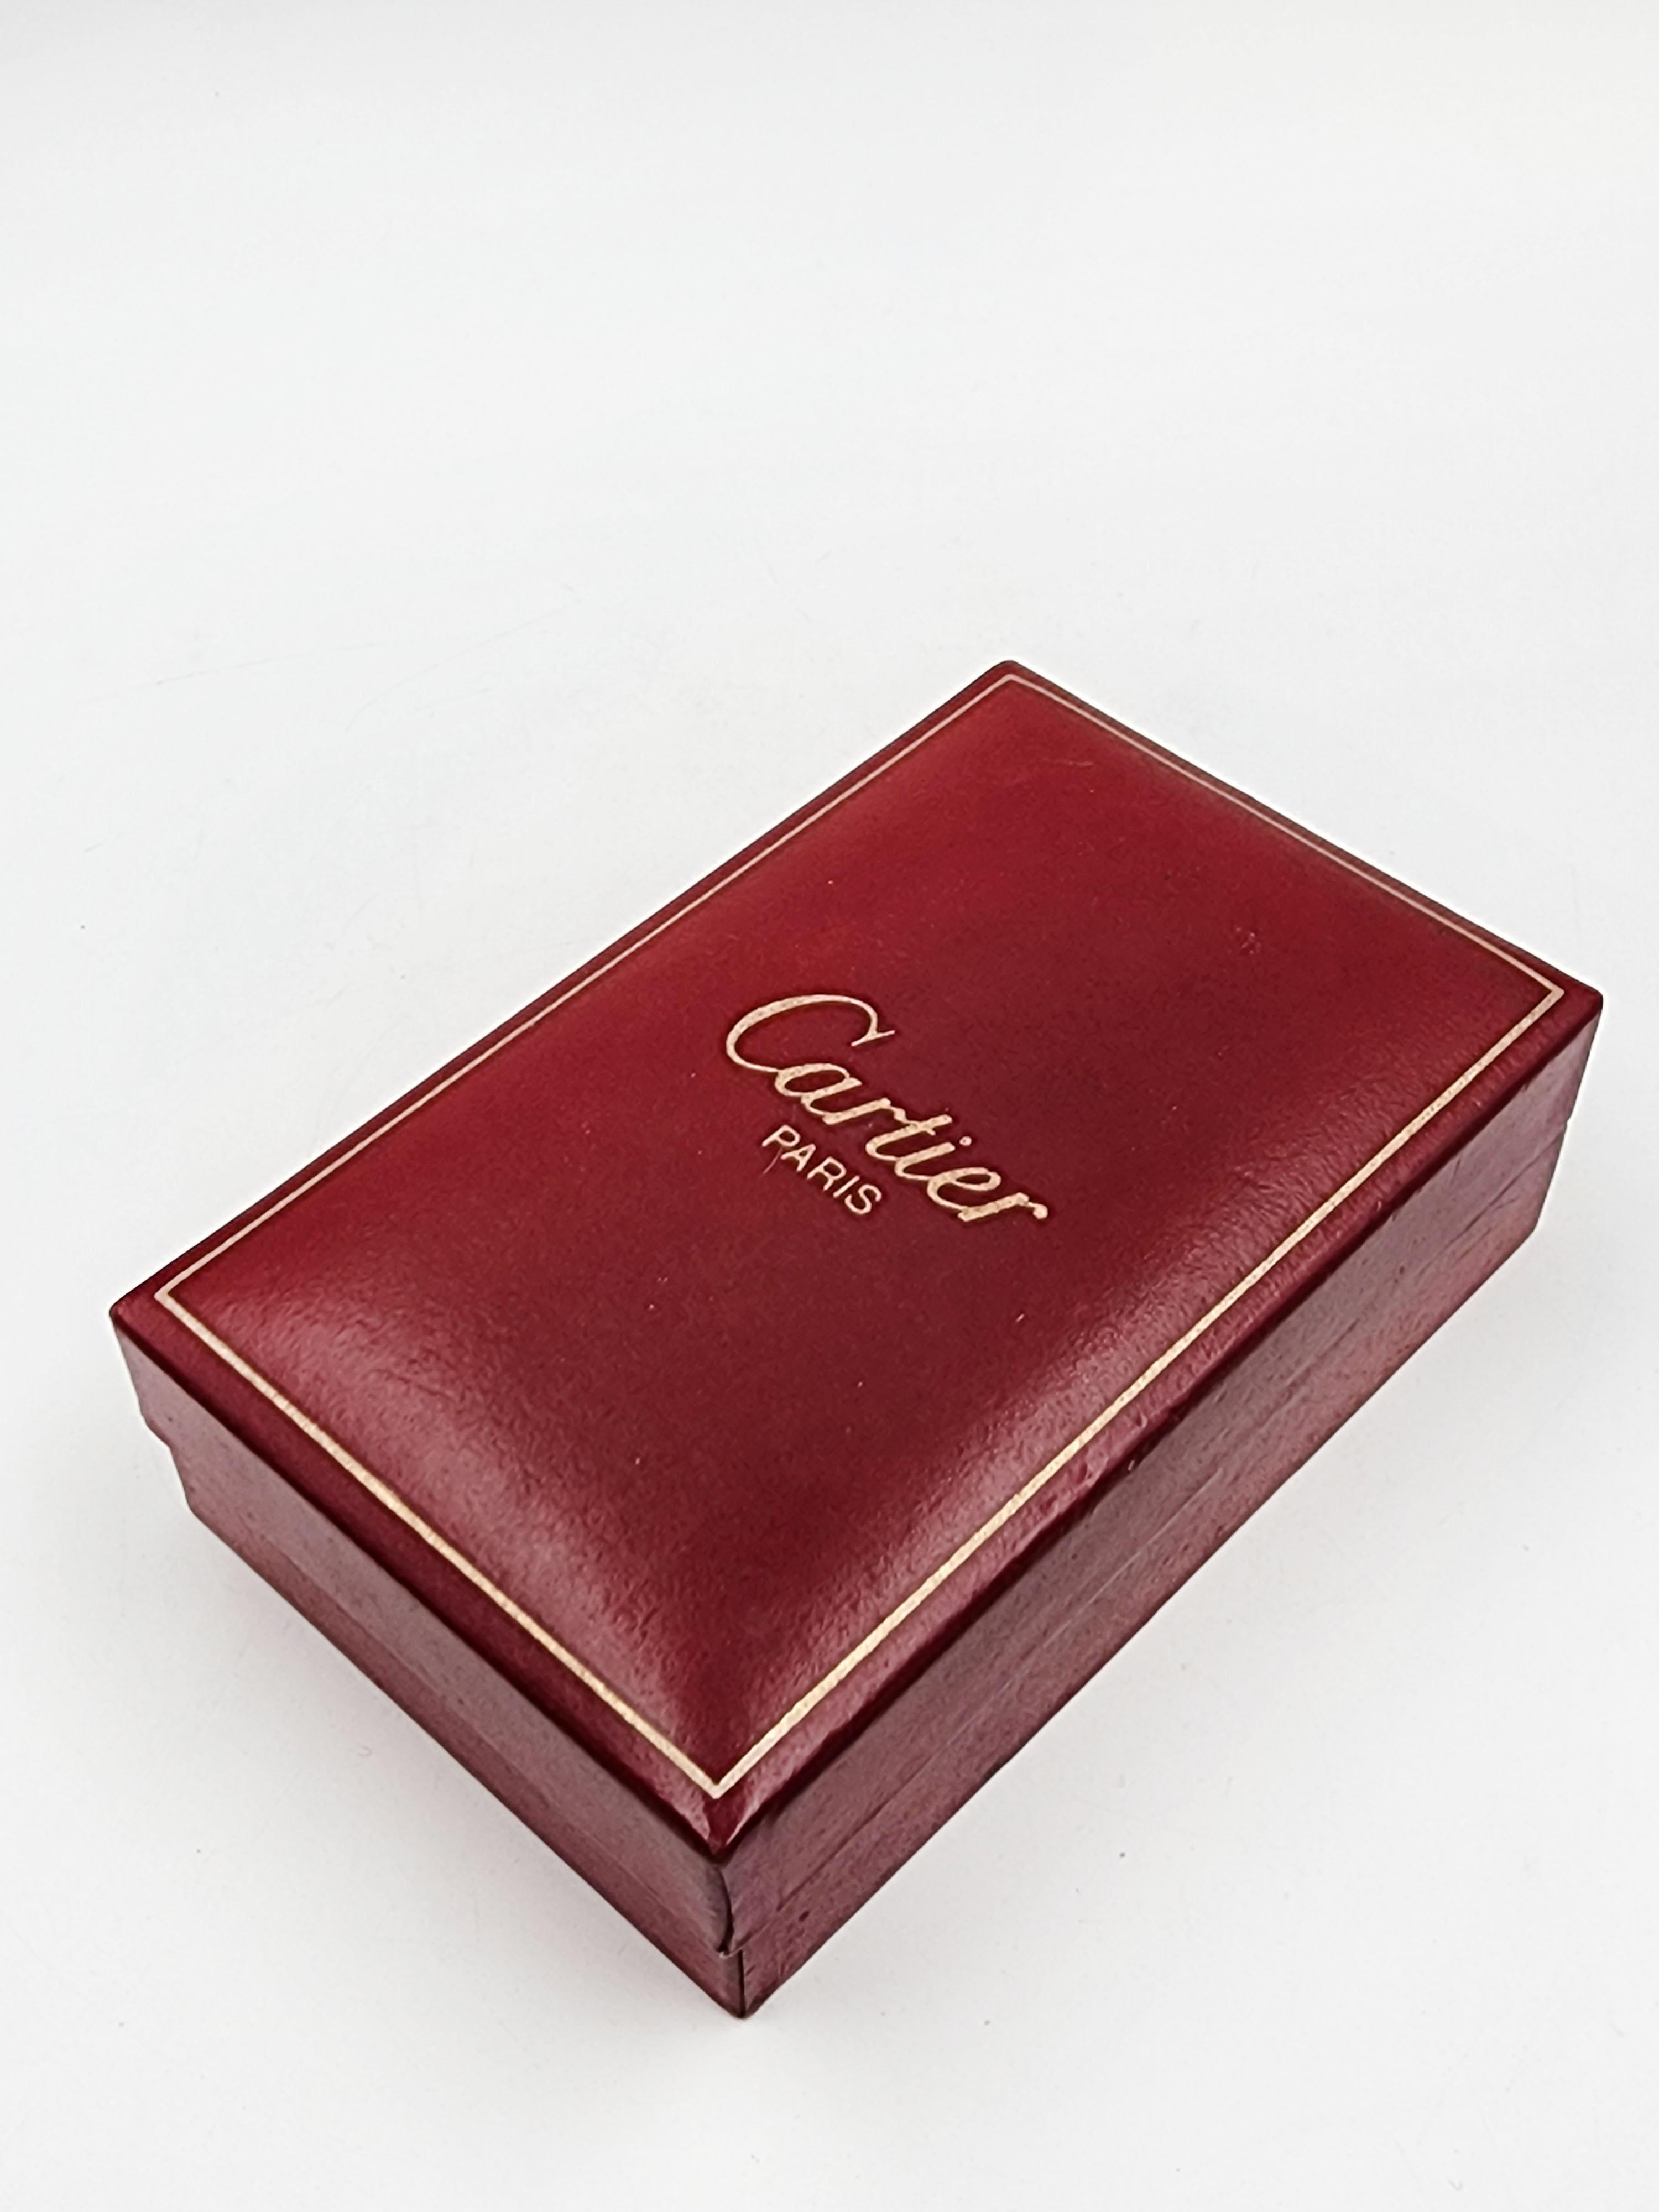 Cartier Lighter Circa 80s Vintage 